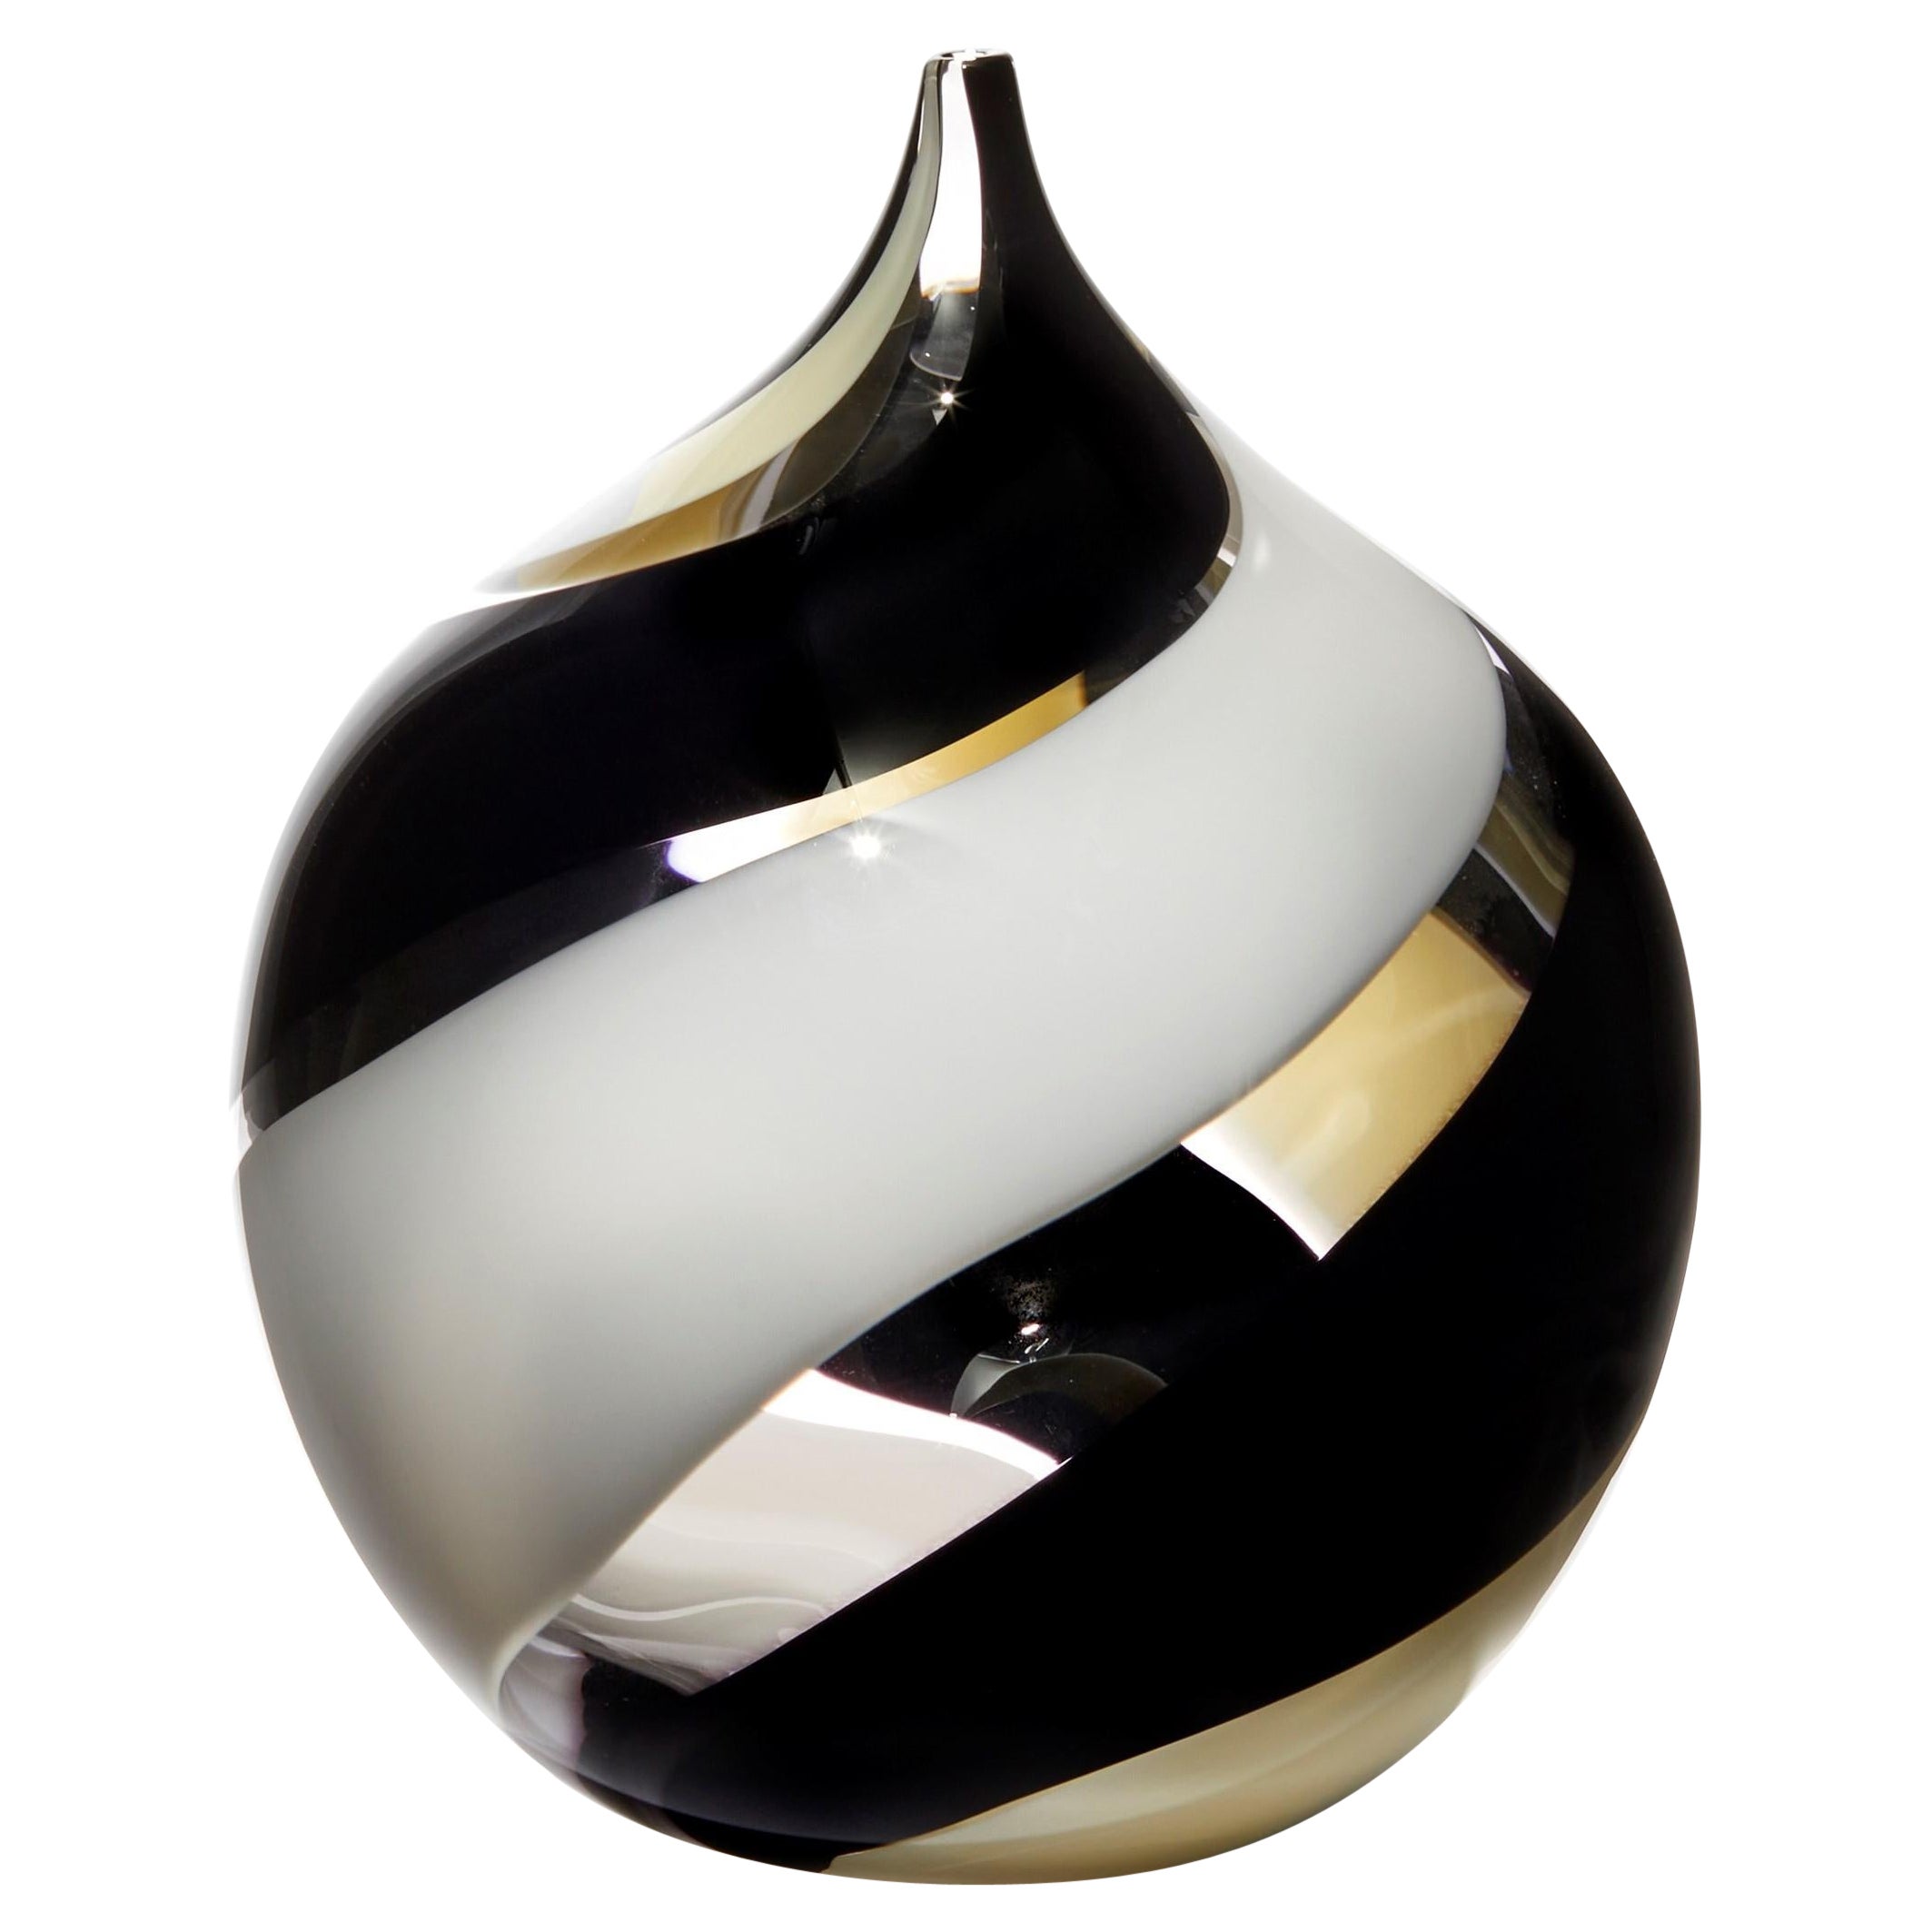 Vaso de cristal soplado a mano Swirl, transparente, negro, ámbar suave y blanco, de Gunnel Sahlin